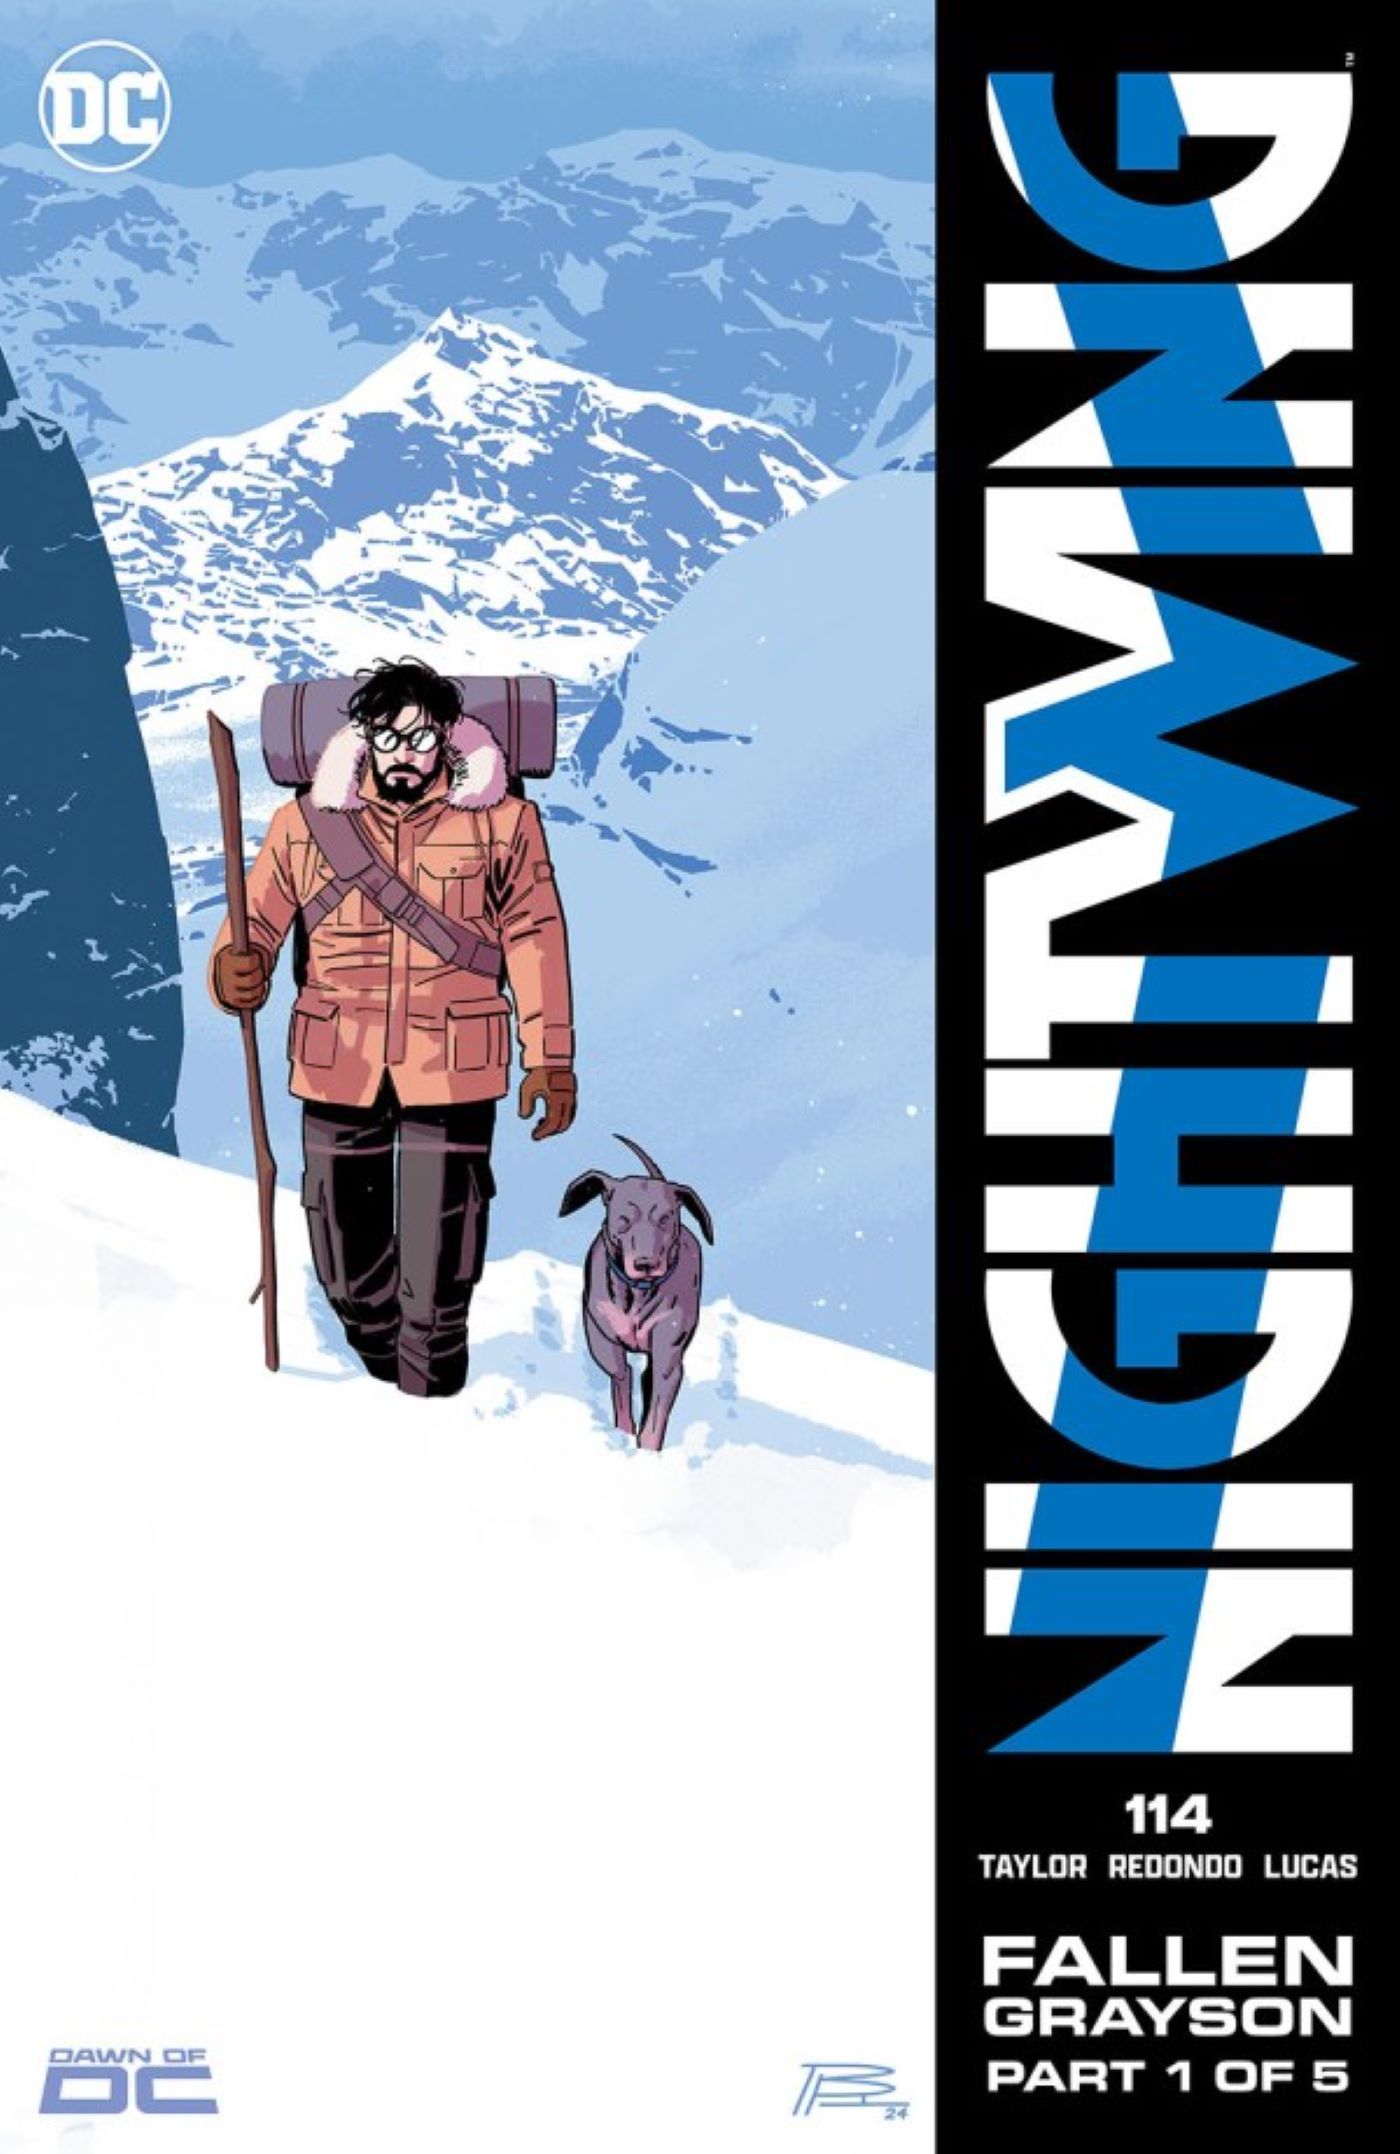 Το εξώφυλλο του Nightwing #114 Fallen Grayson περιλαμβάνει τον Dick Grayson και τη Hayley